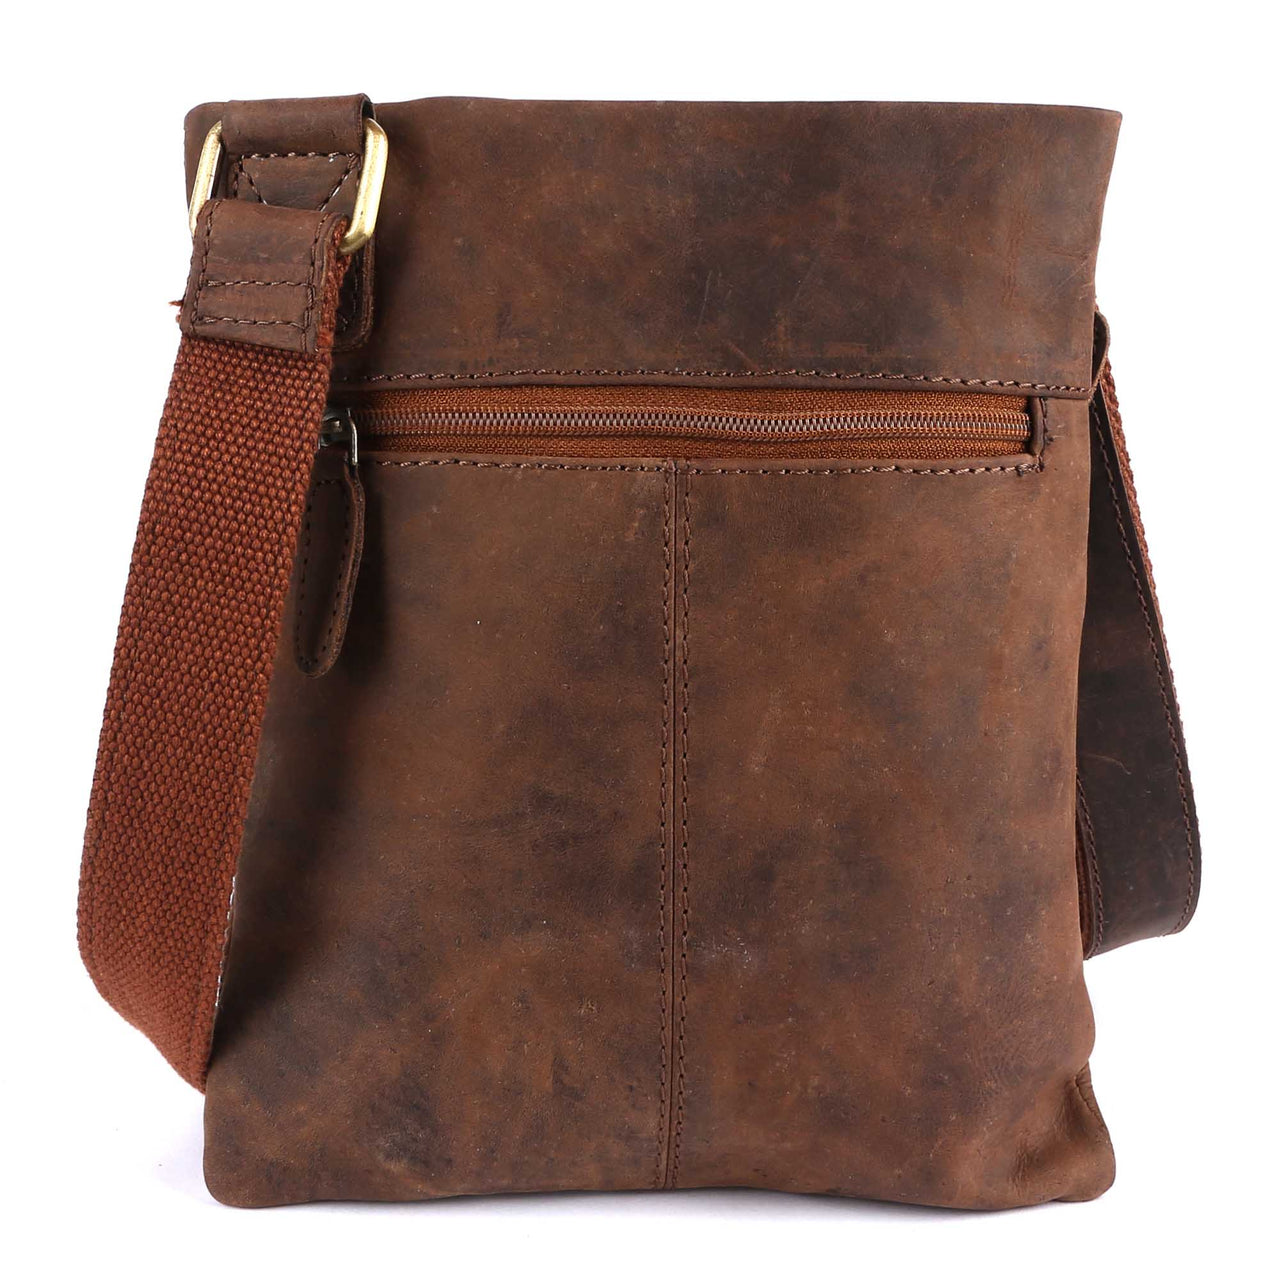 Pinato Genuine Leather Cognac Messenger Bag for Men & Women (PL-4318)